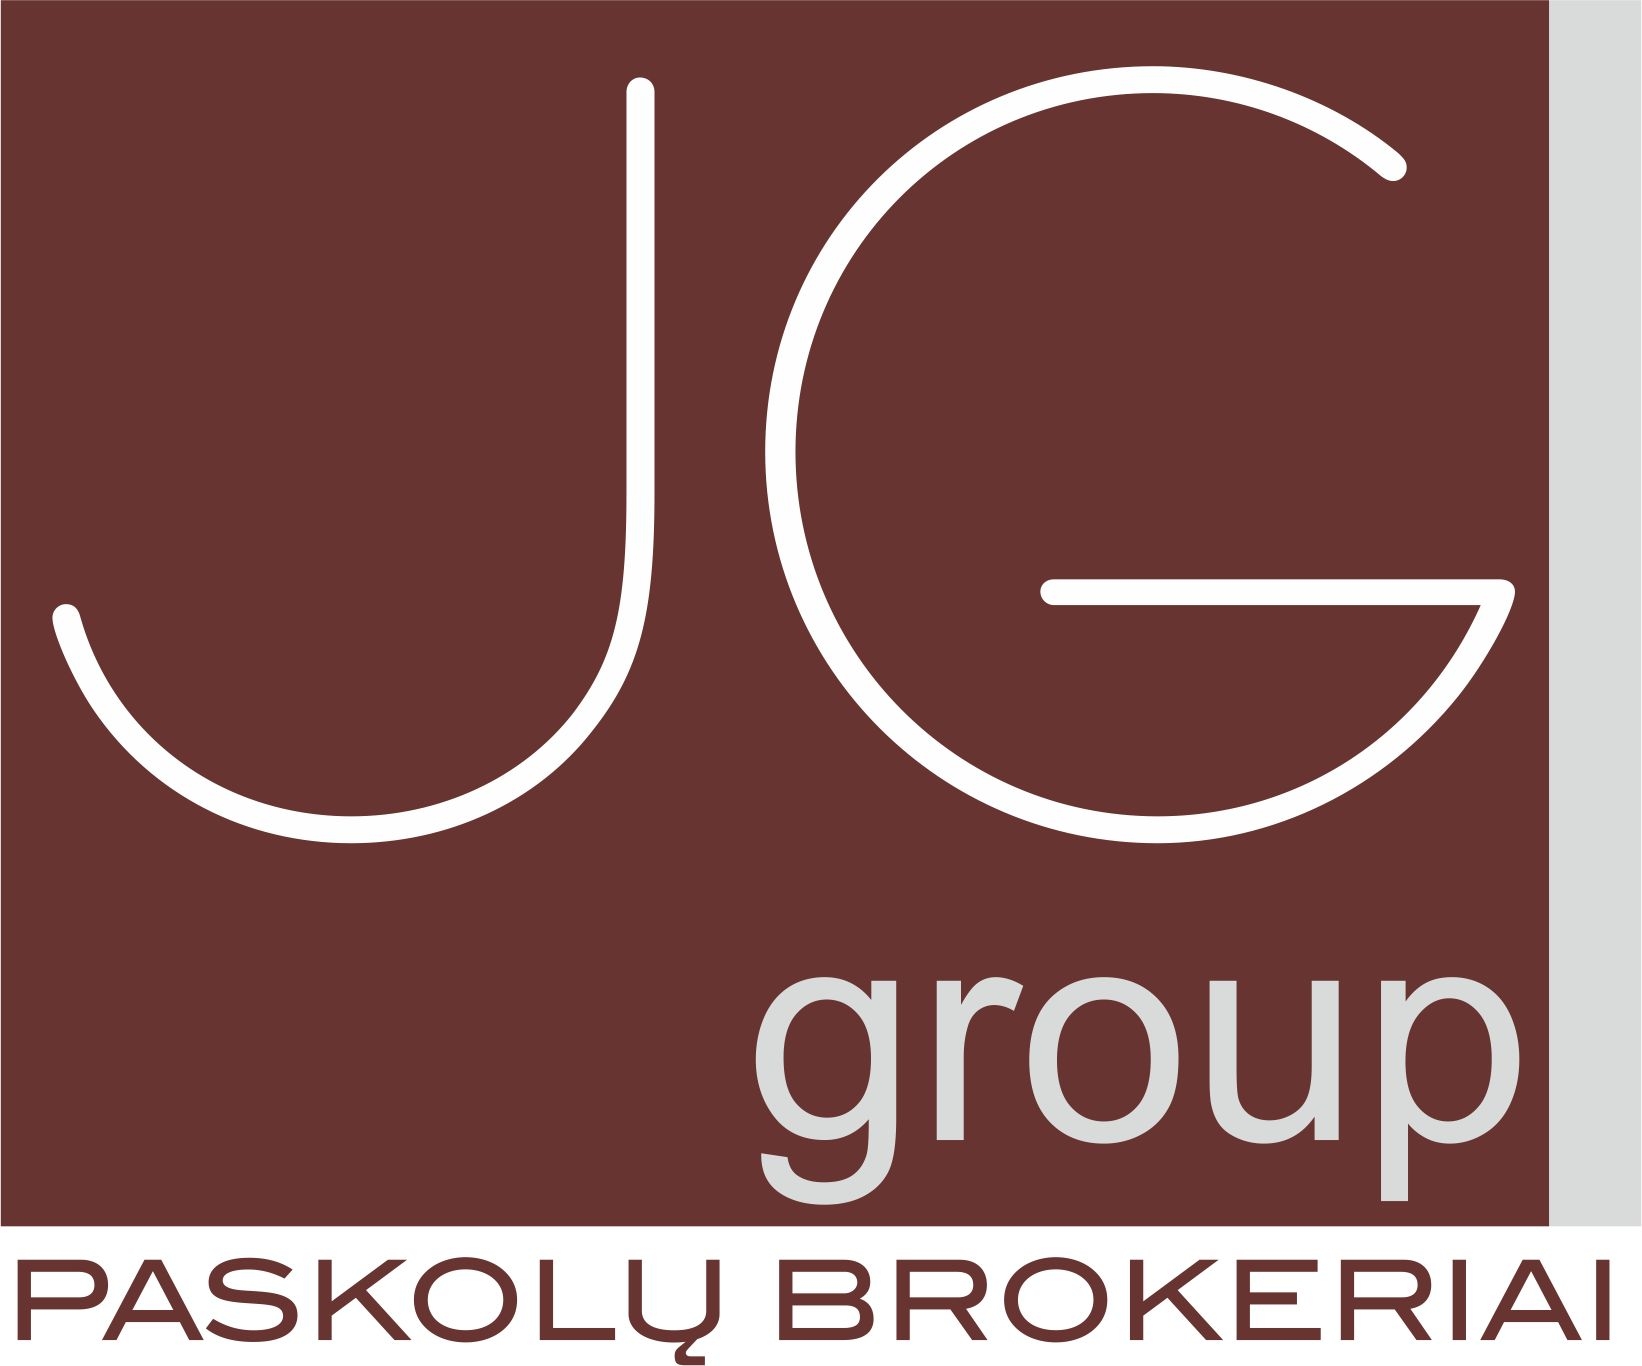 Paskolų brokeriai „JG Group”